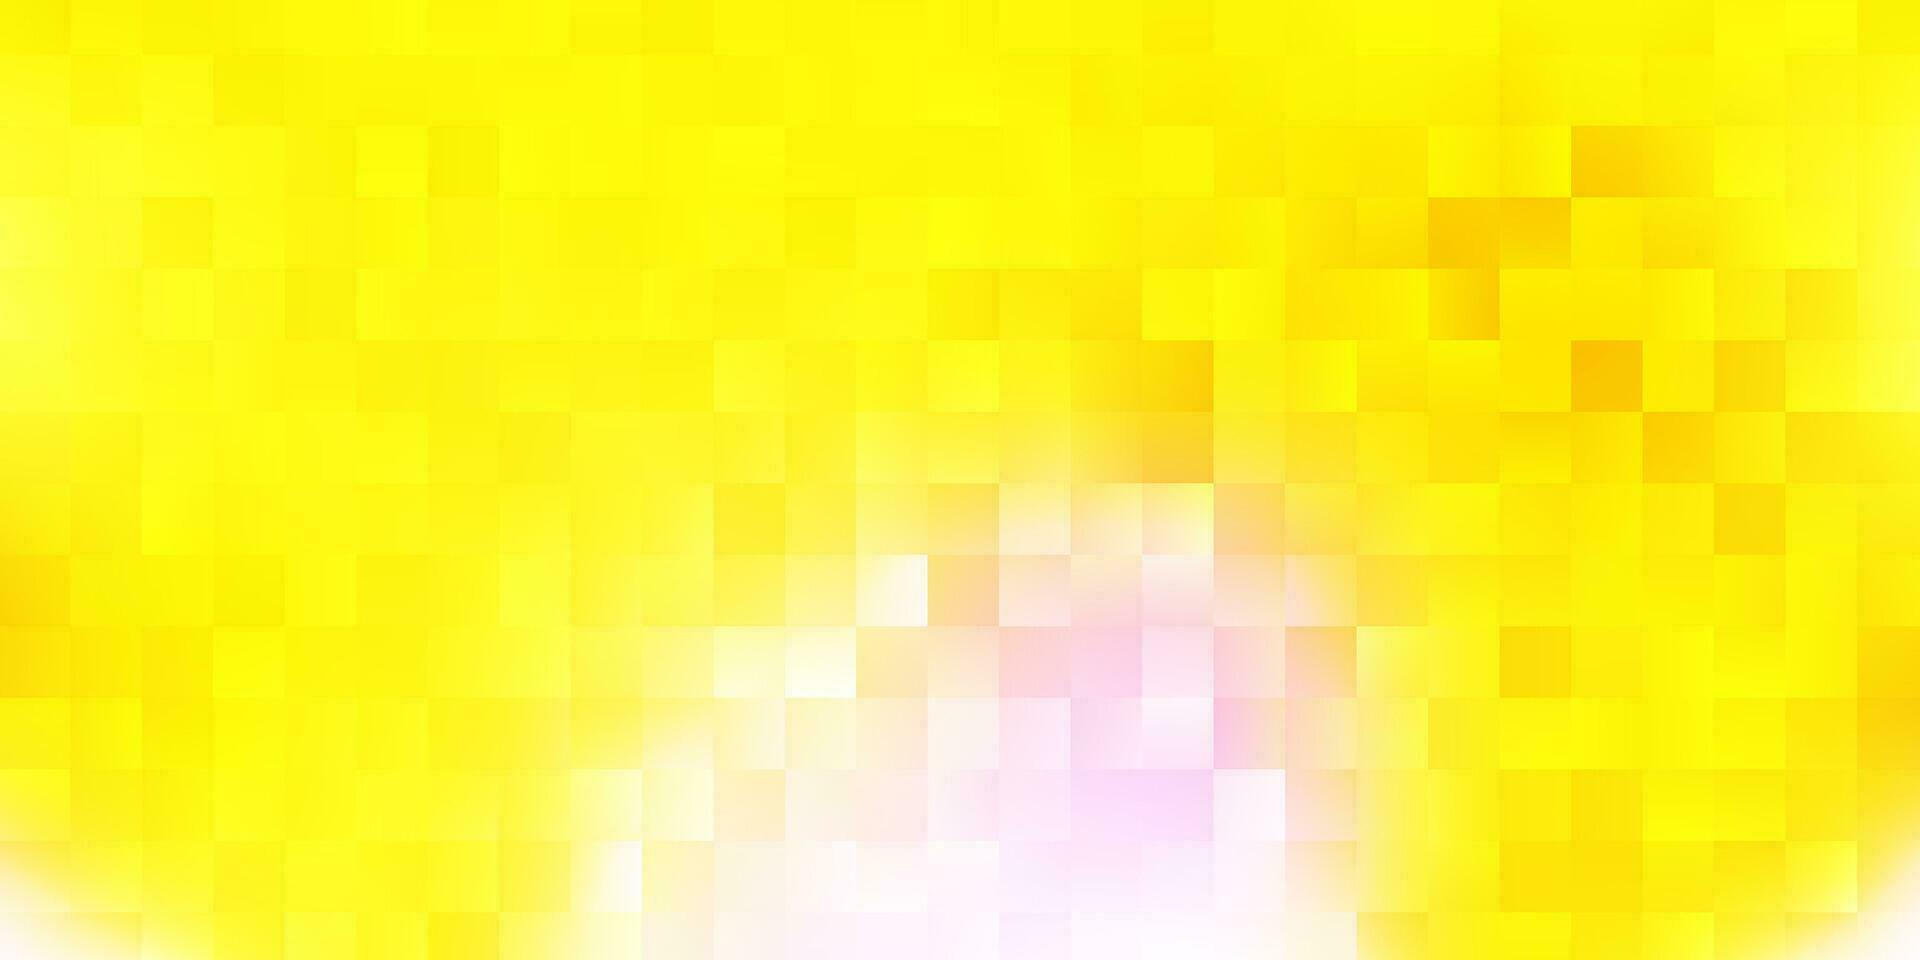 diseño de vector rosa claro, amarillo con líneas, rectángulos.